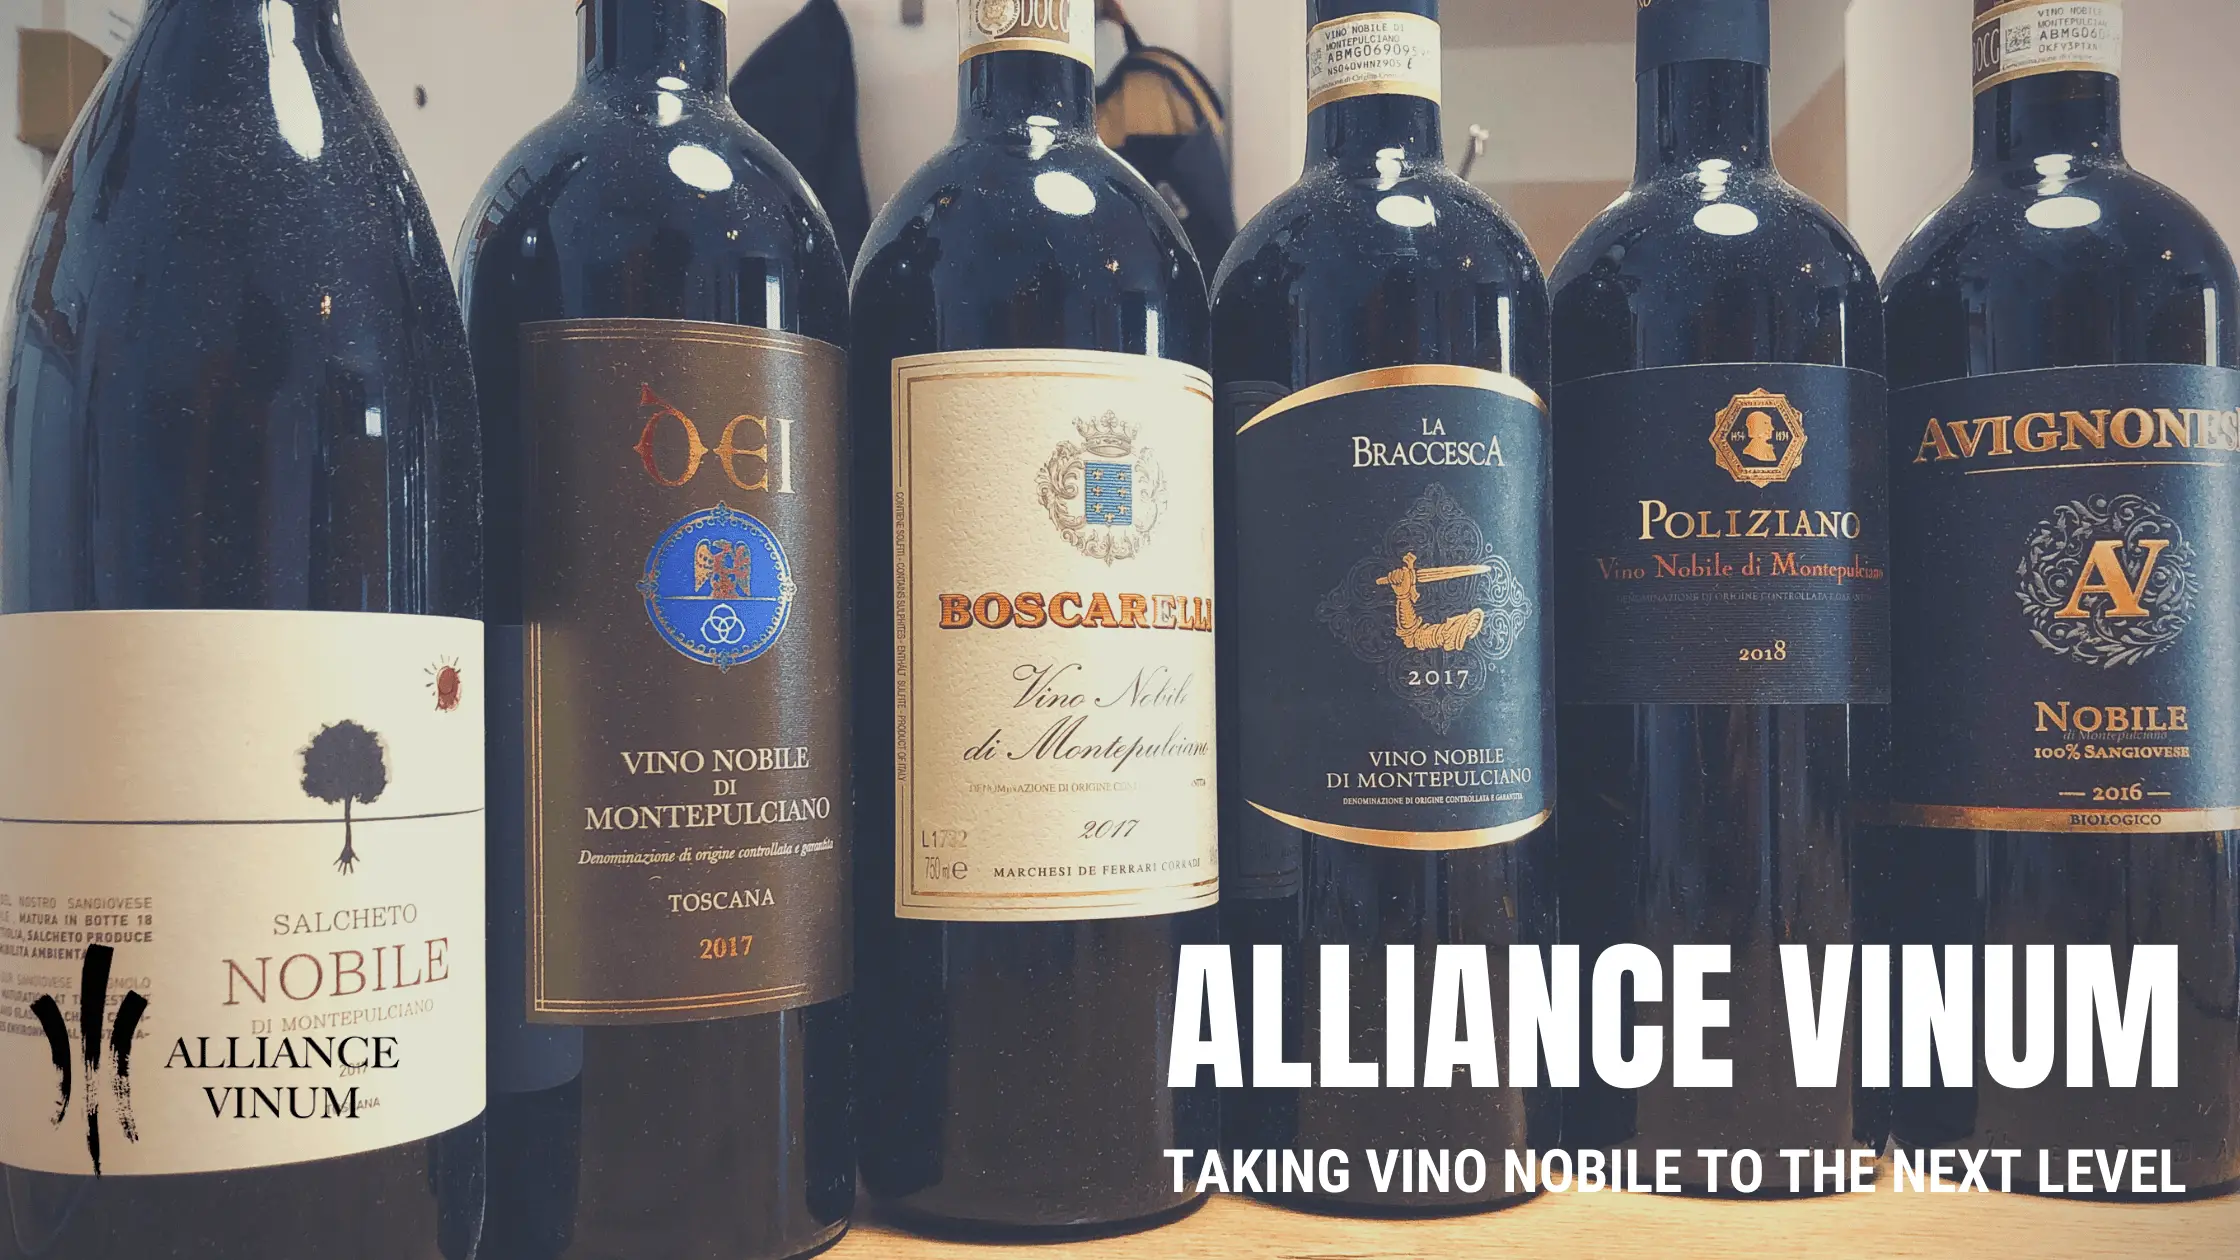 vino nobile alliance vinum sangiovese